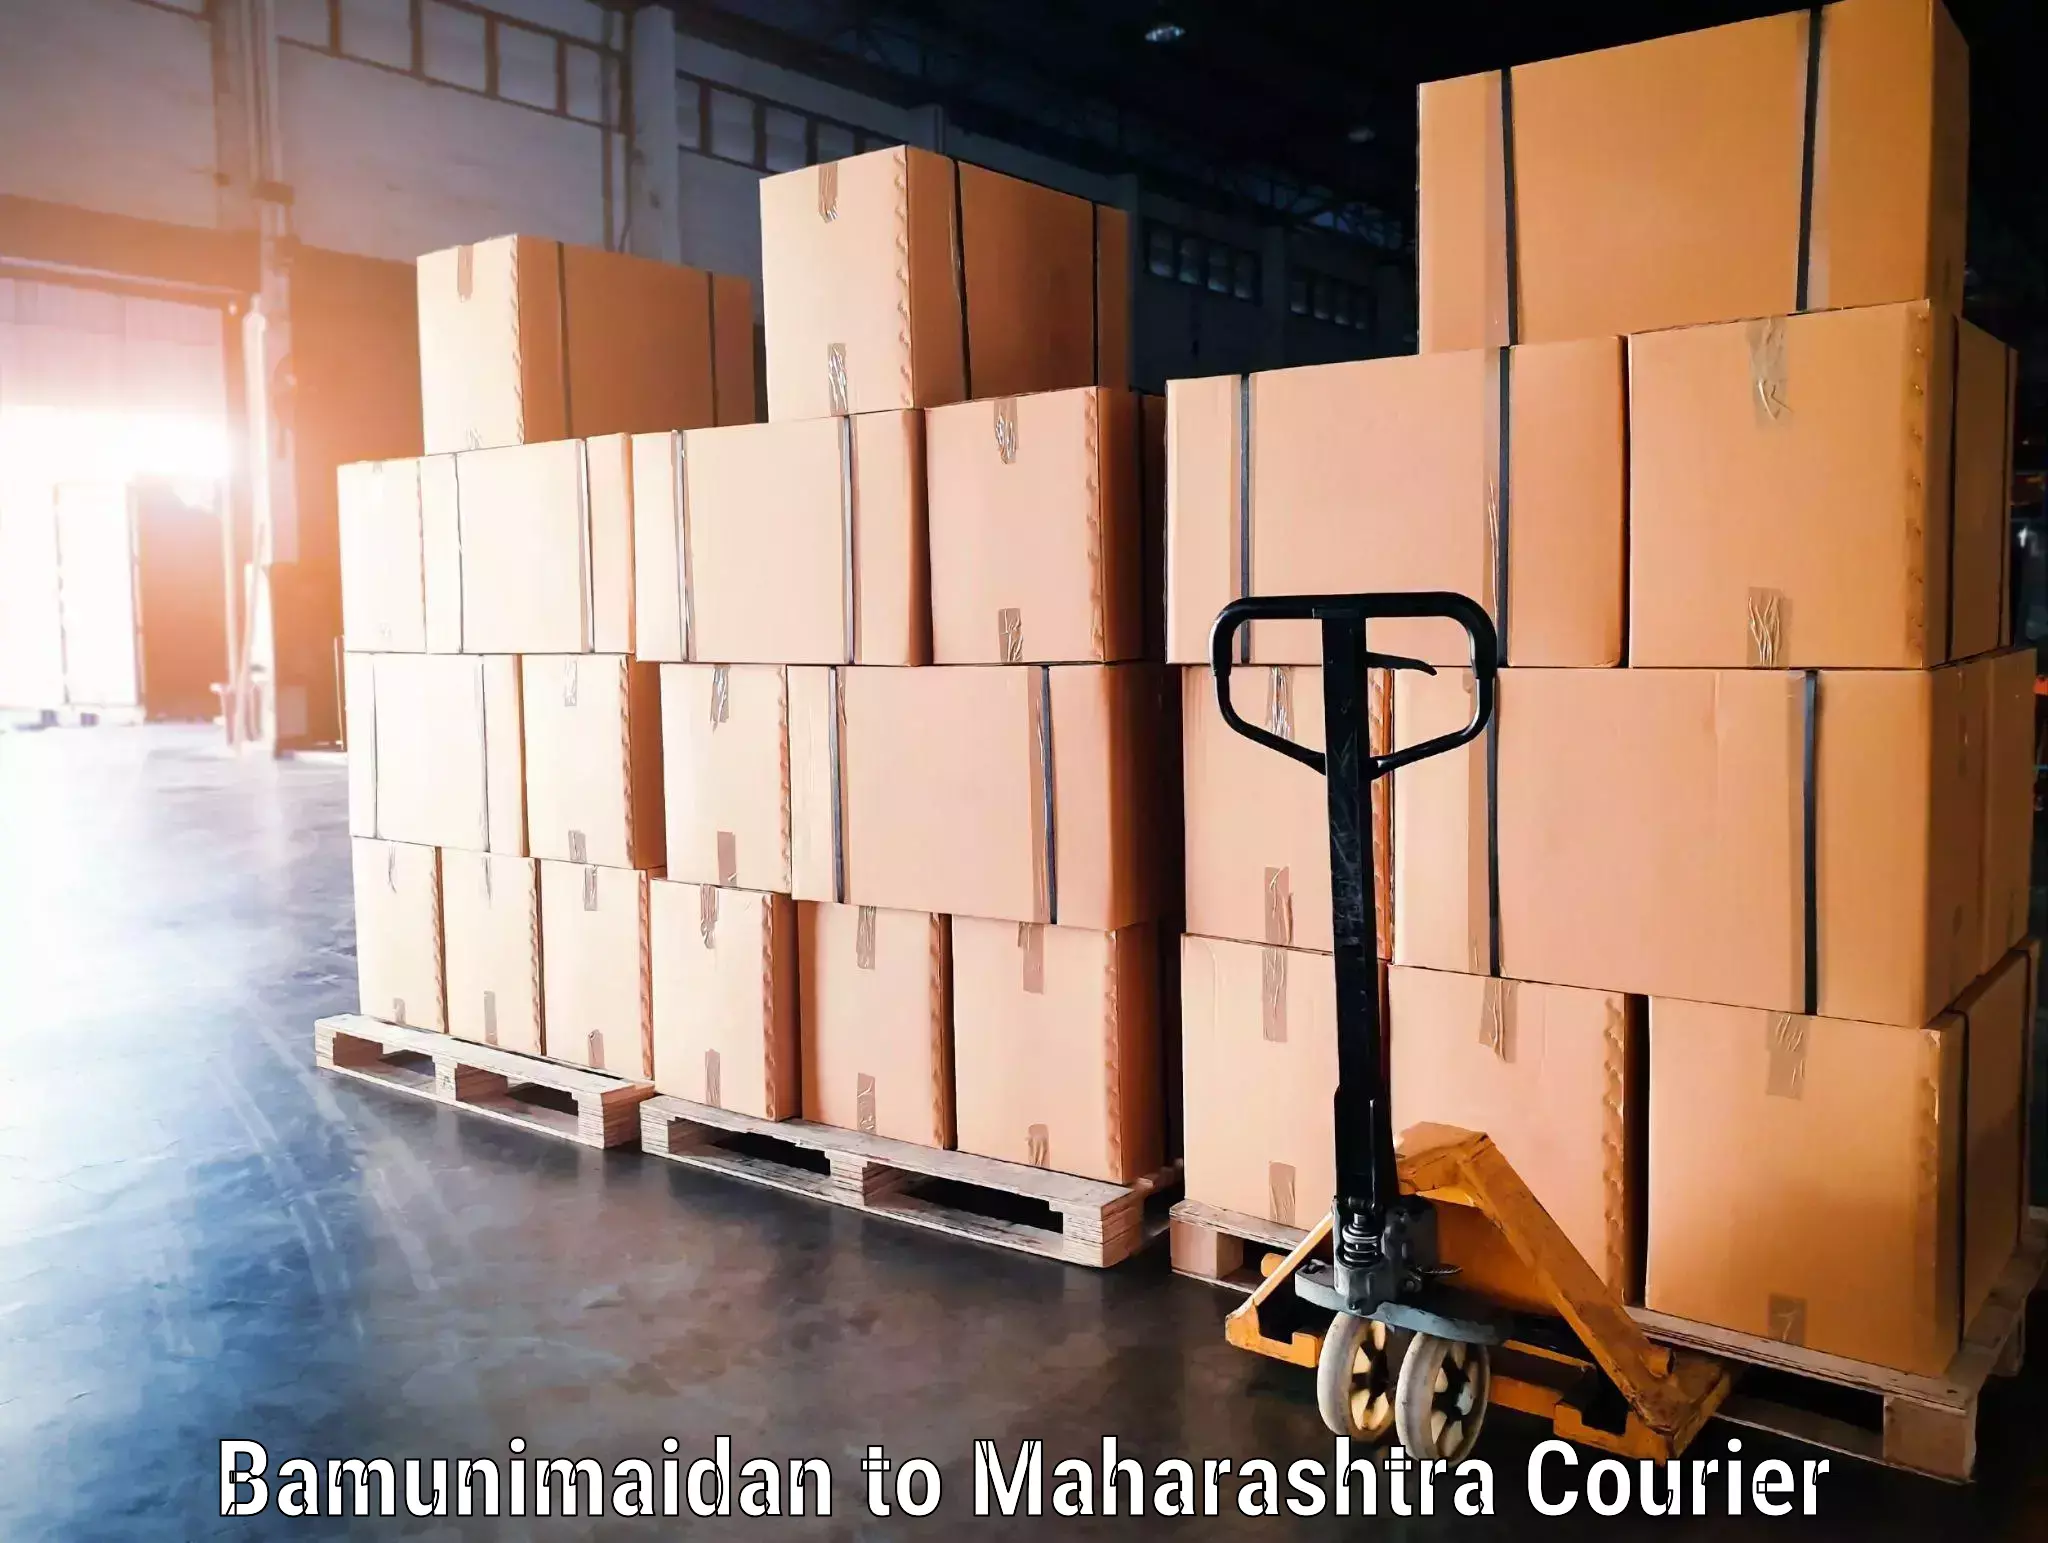 Baggage shipping experience in Bamunimaidan to Maharashtra